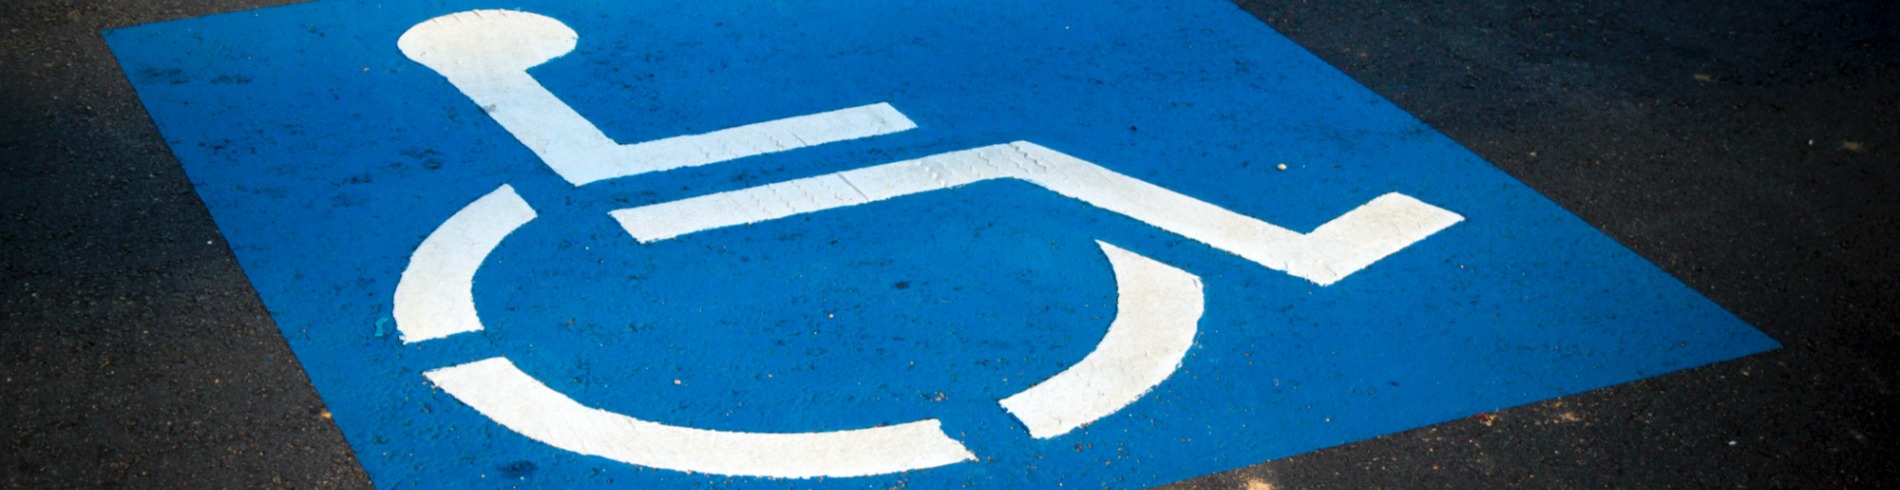 Handicap parking symbol on the ground